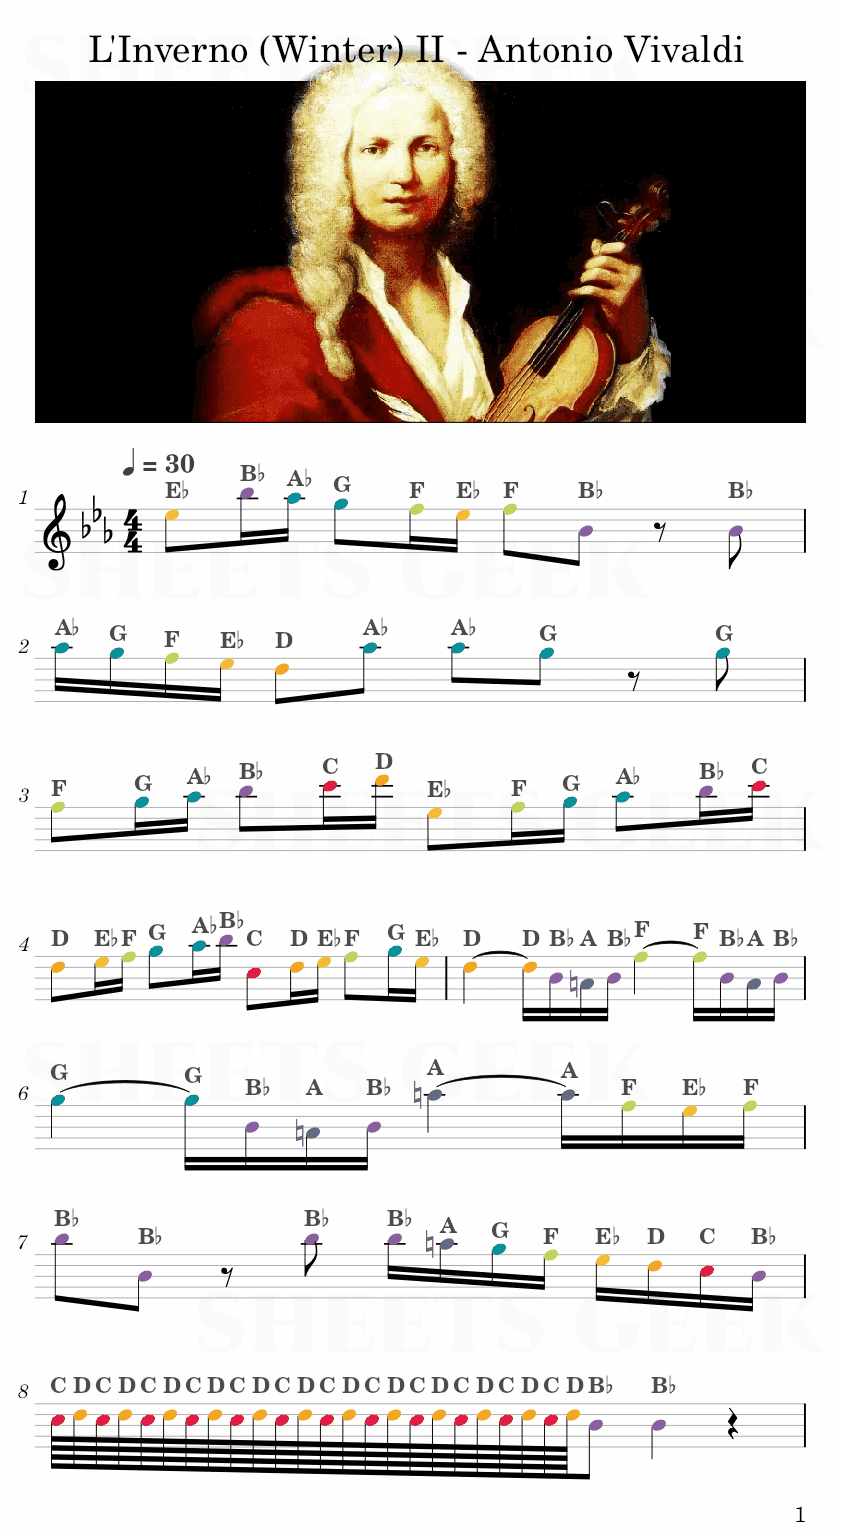 L'Inverno (Winter) II - Antonio Vivaldi Easy Sheet Music Free for piano, keyboard, flute, violin, sax, cello page 1